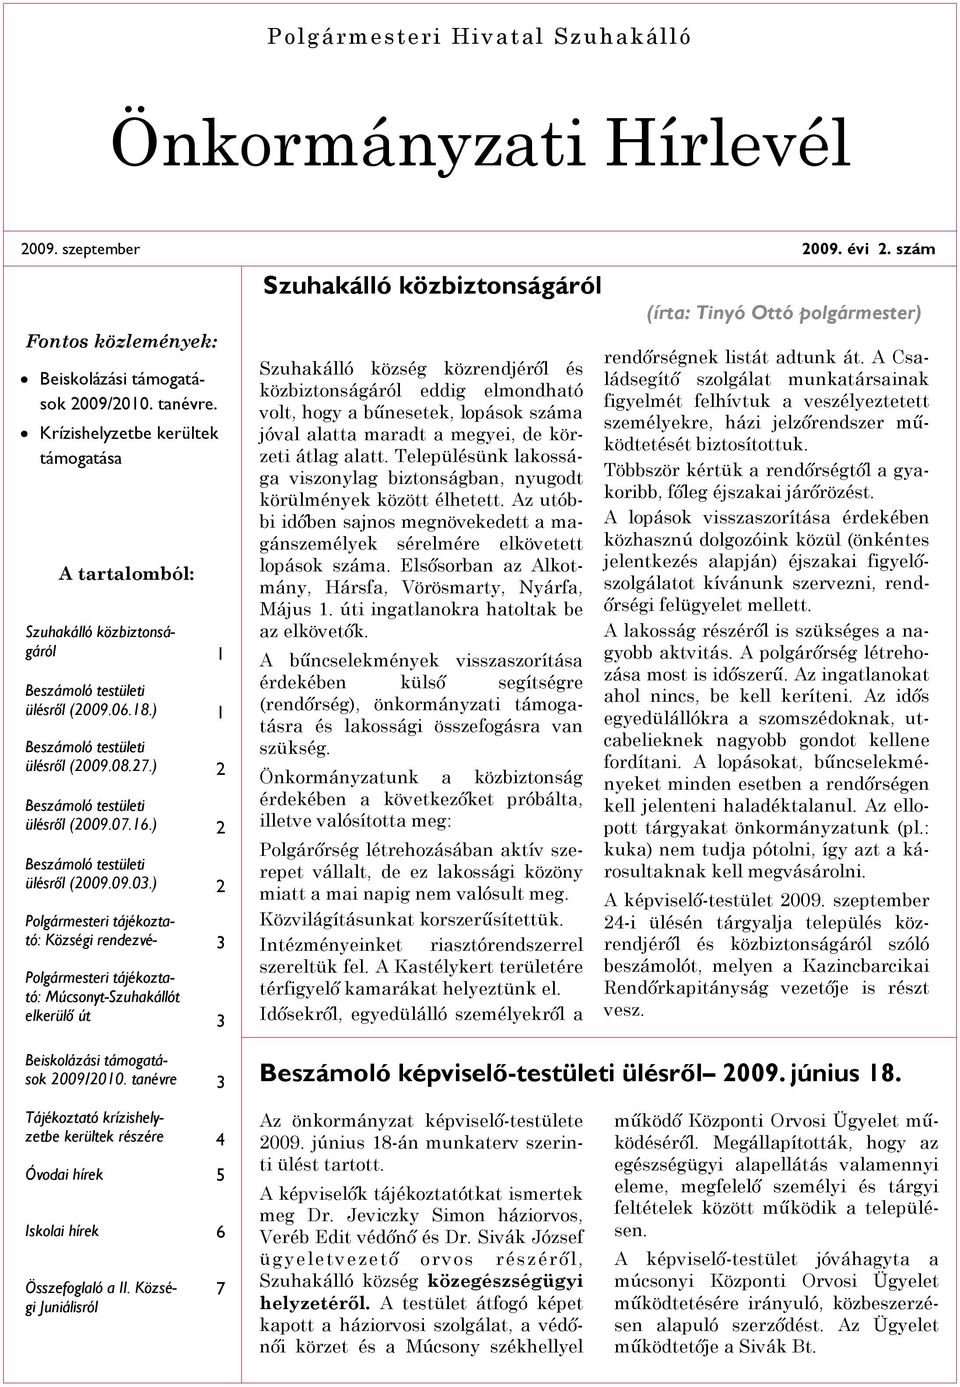 ) 2 Polgármesteri tájékoztató: Községi rendezvé- 3 Polgármesteri tájékoztató: Múcsonyt-Szuhakállót elkerülõ út 3 Beiskolázási támogatások 2009/2010.